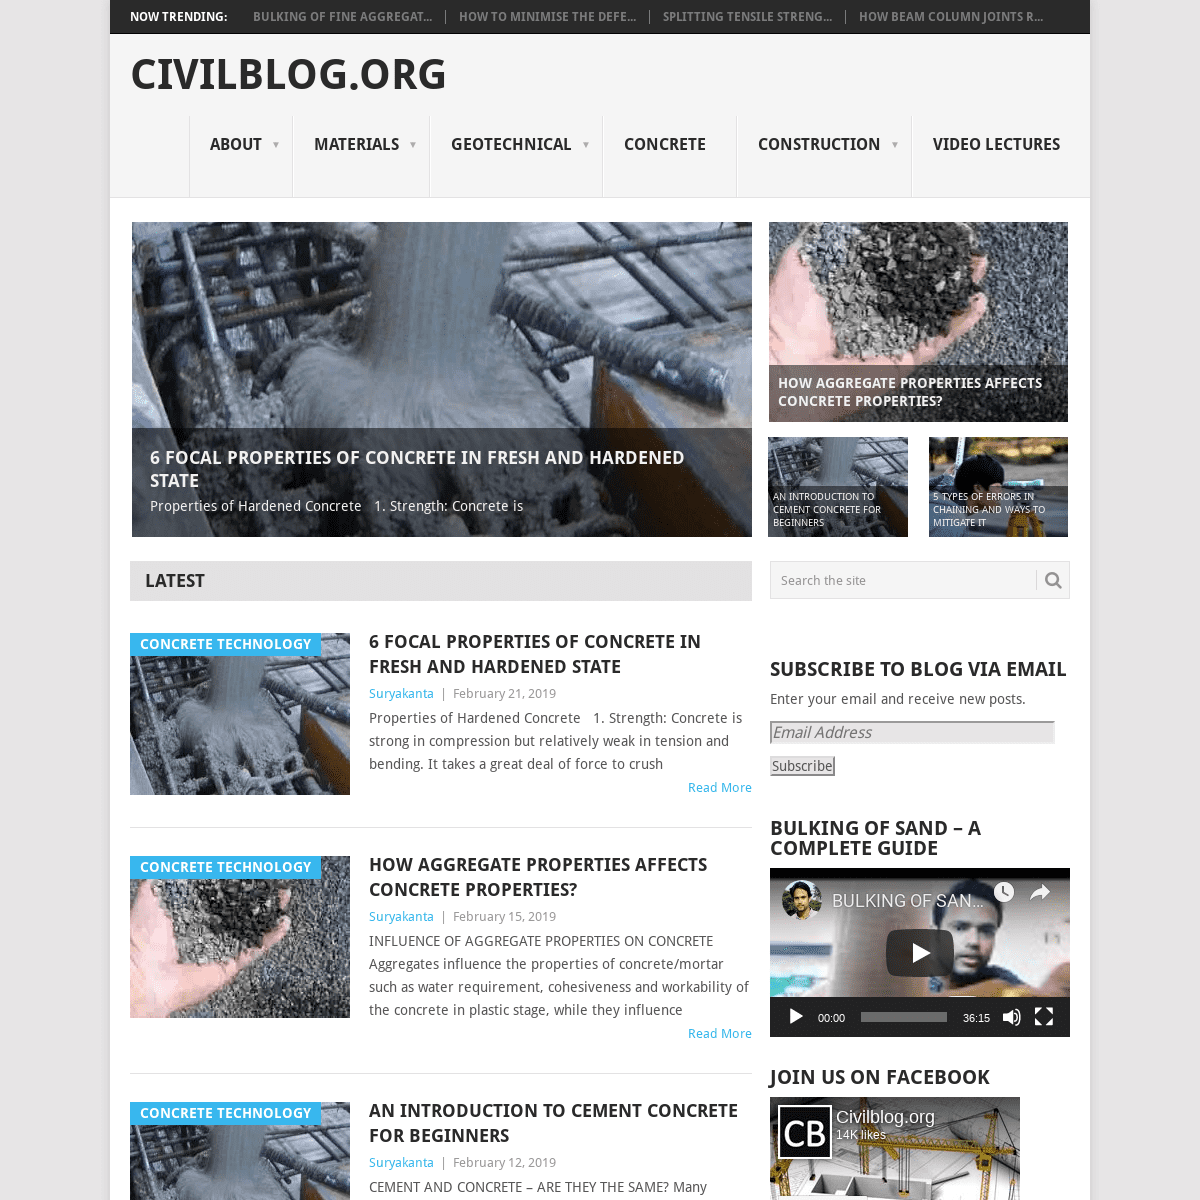 CivilBlog.Org - Reinforcing Civil Engineers